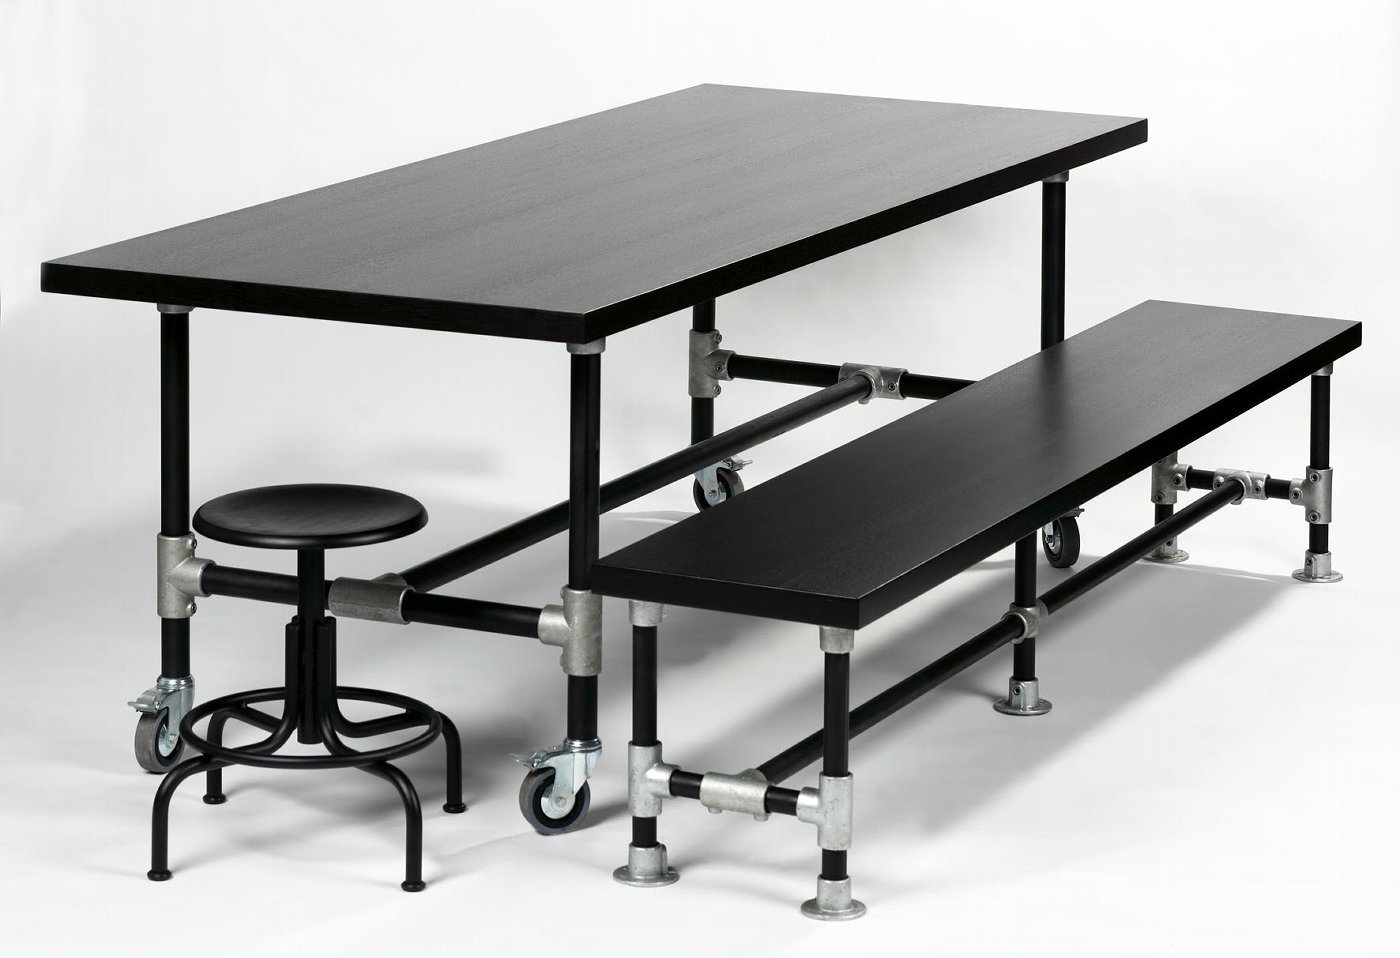 Industrie table black 1oox1oox74cm